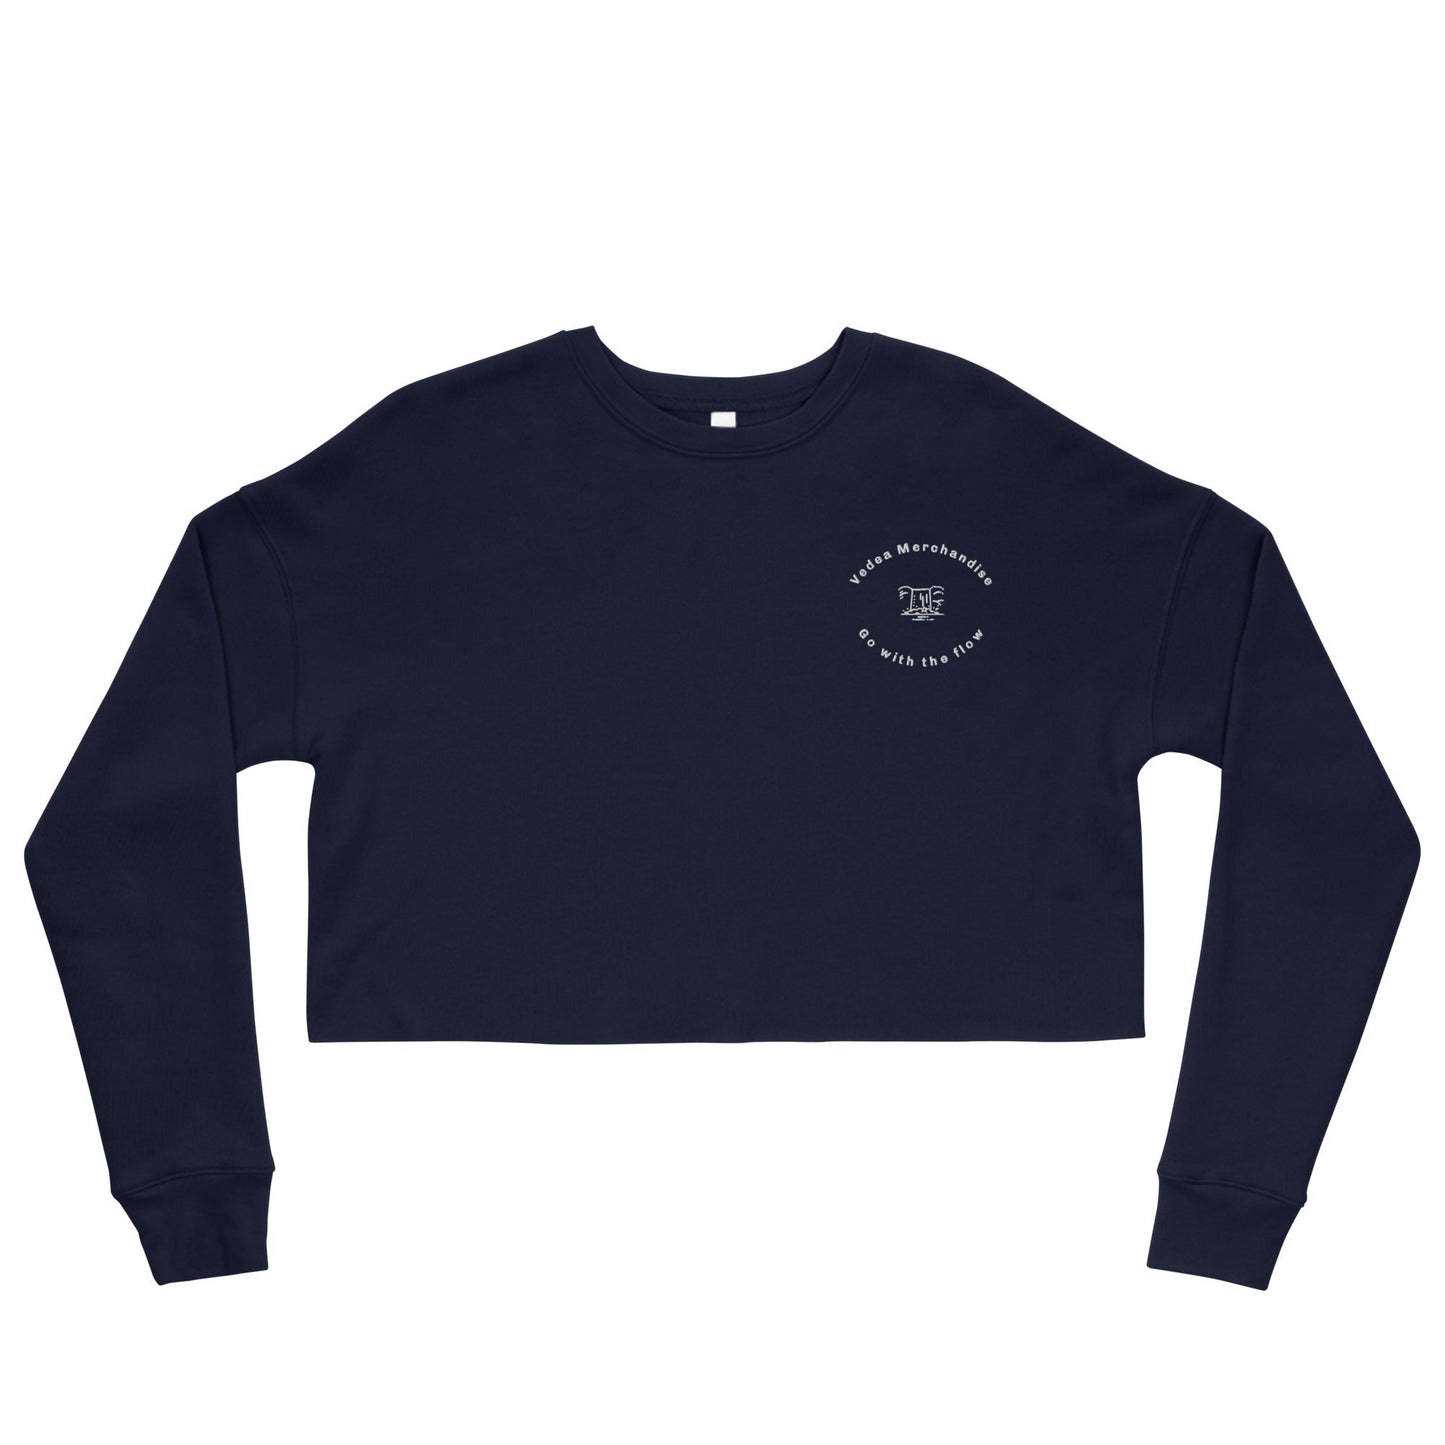 Crop Sweatshirt - Vedea MerchandiseNavyS